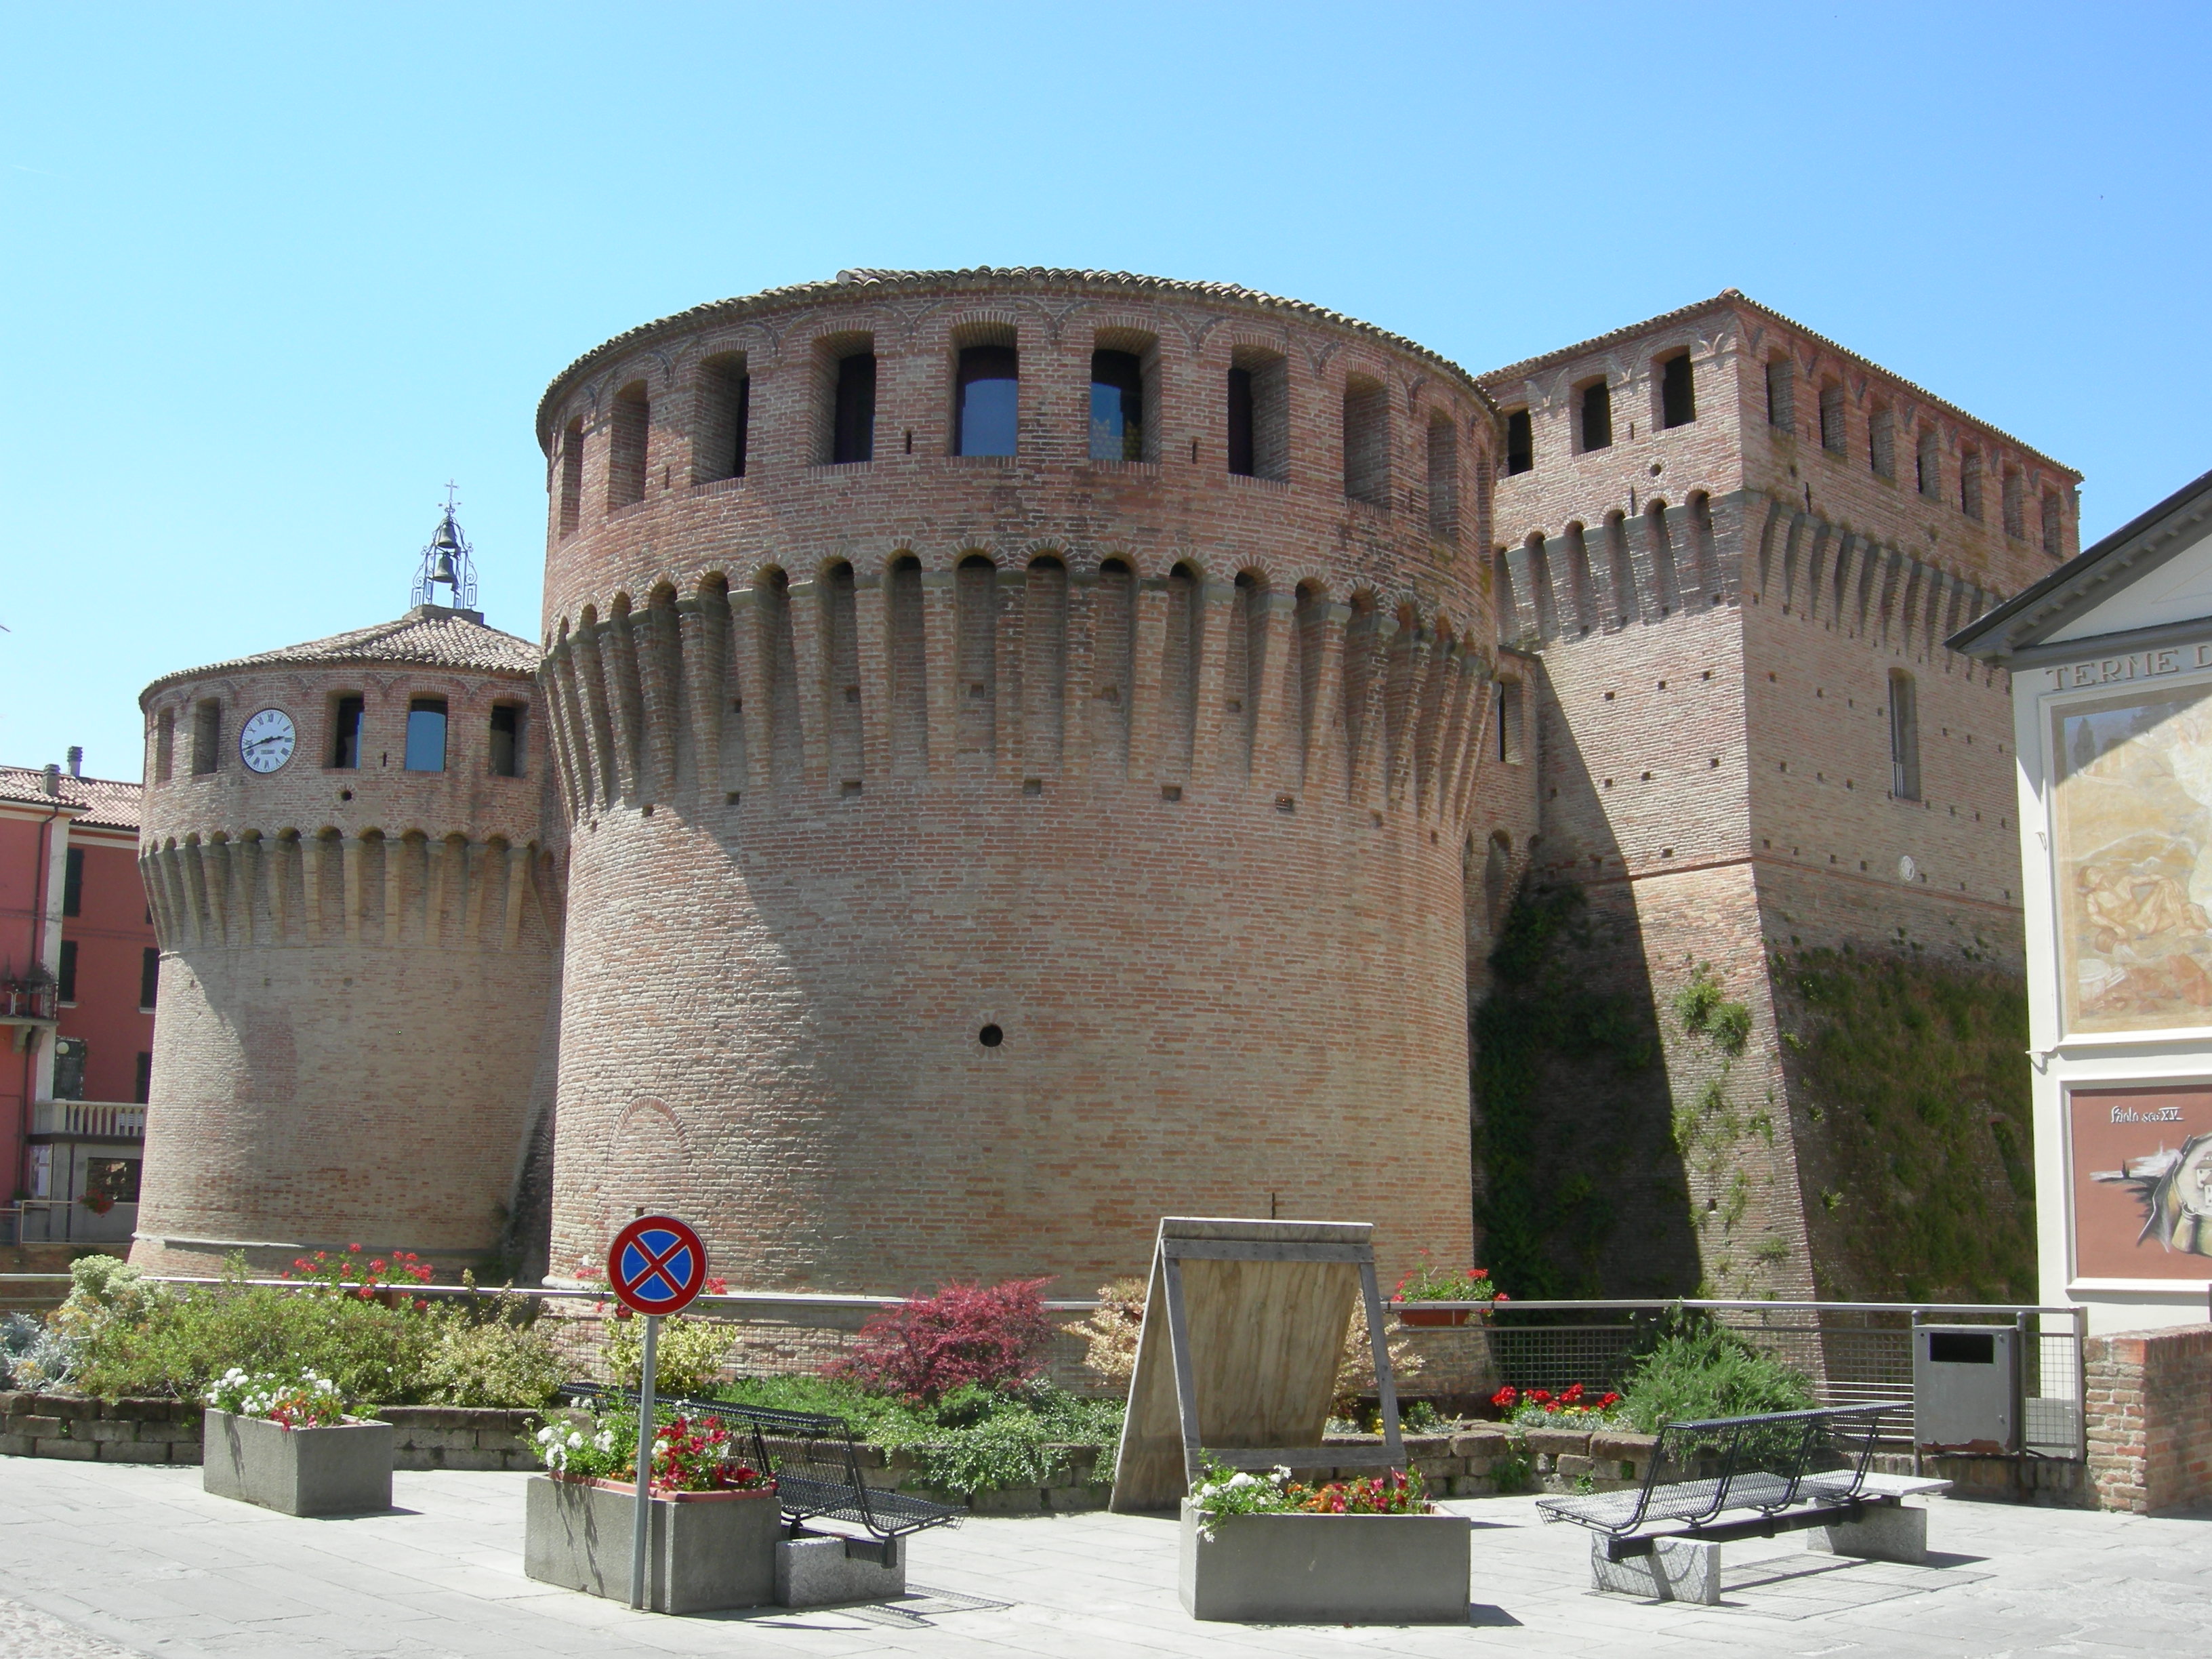 photo: https://upload.wikimedia.org/wikipedia/commons/e/eb/Rocca_sforzesca_Riolo_Terme.jpg